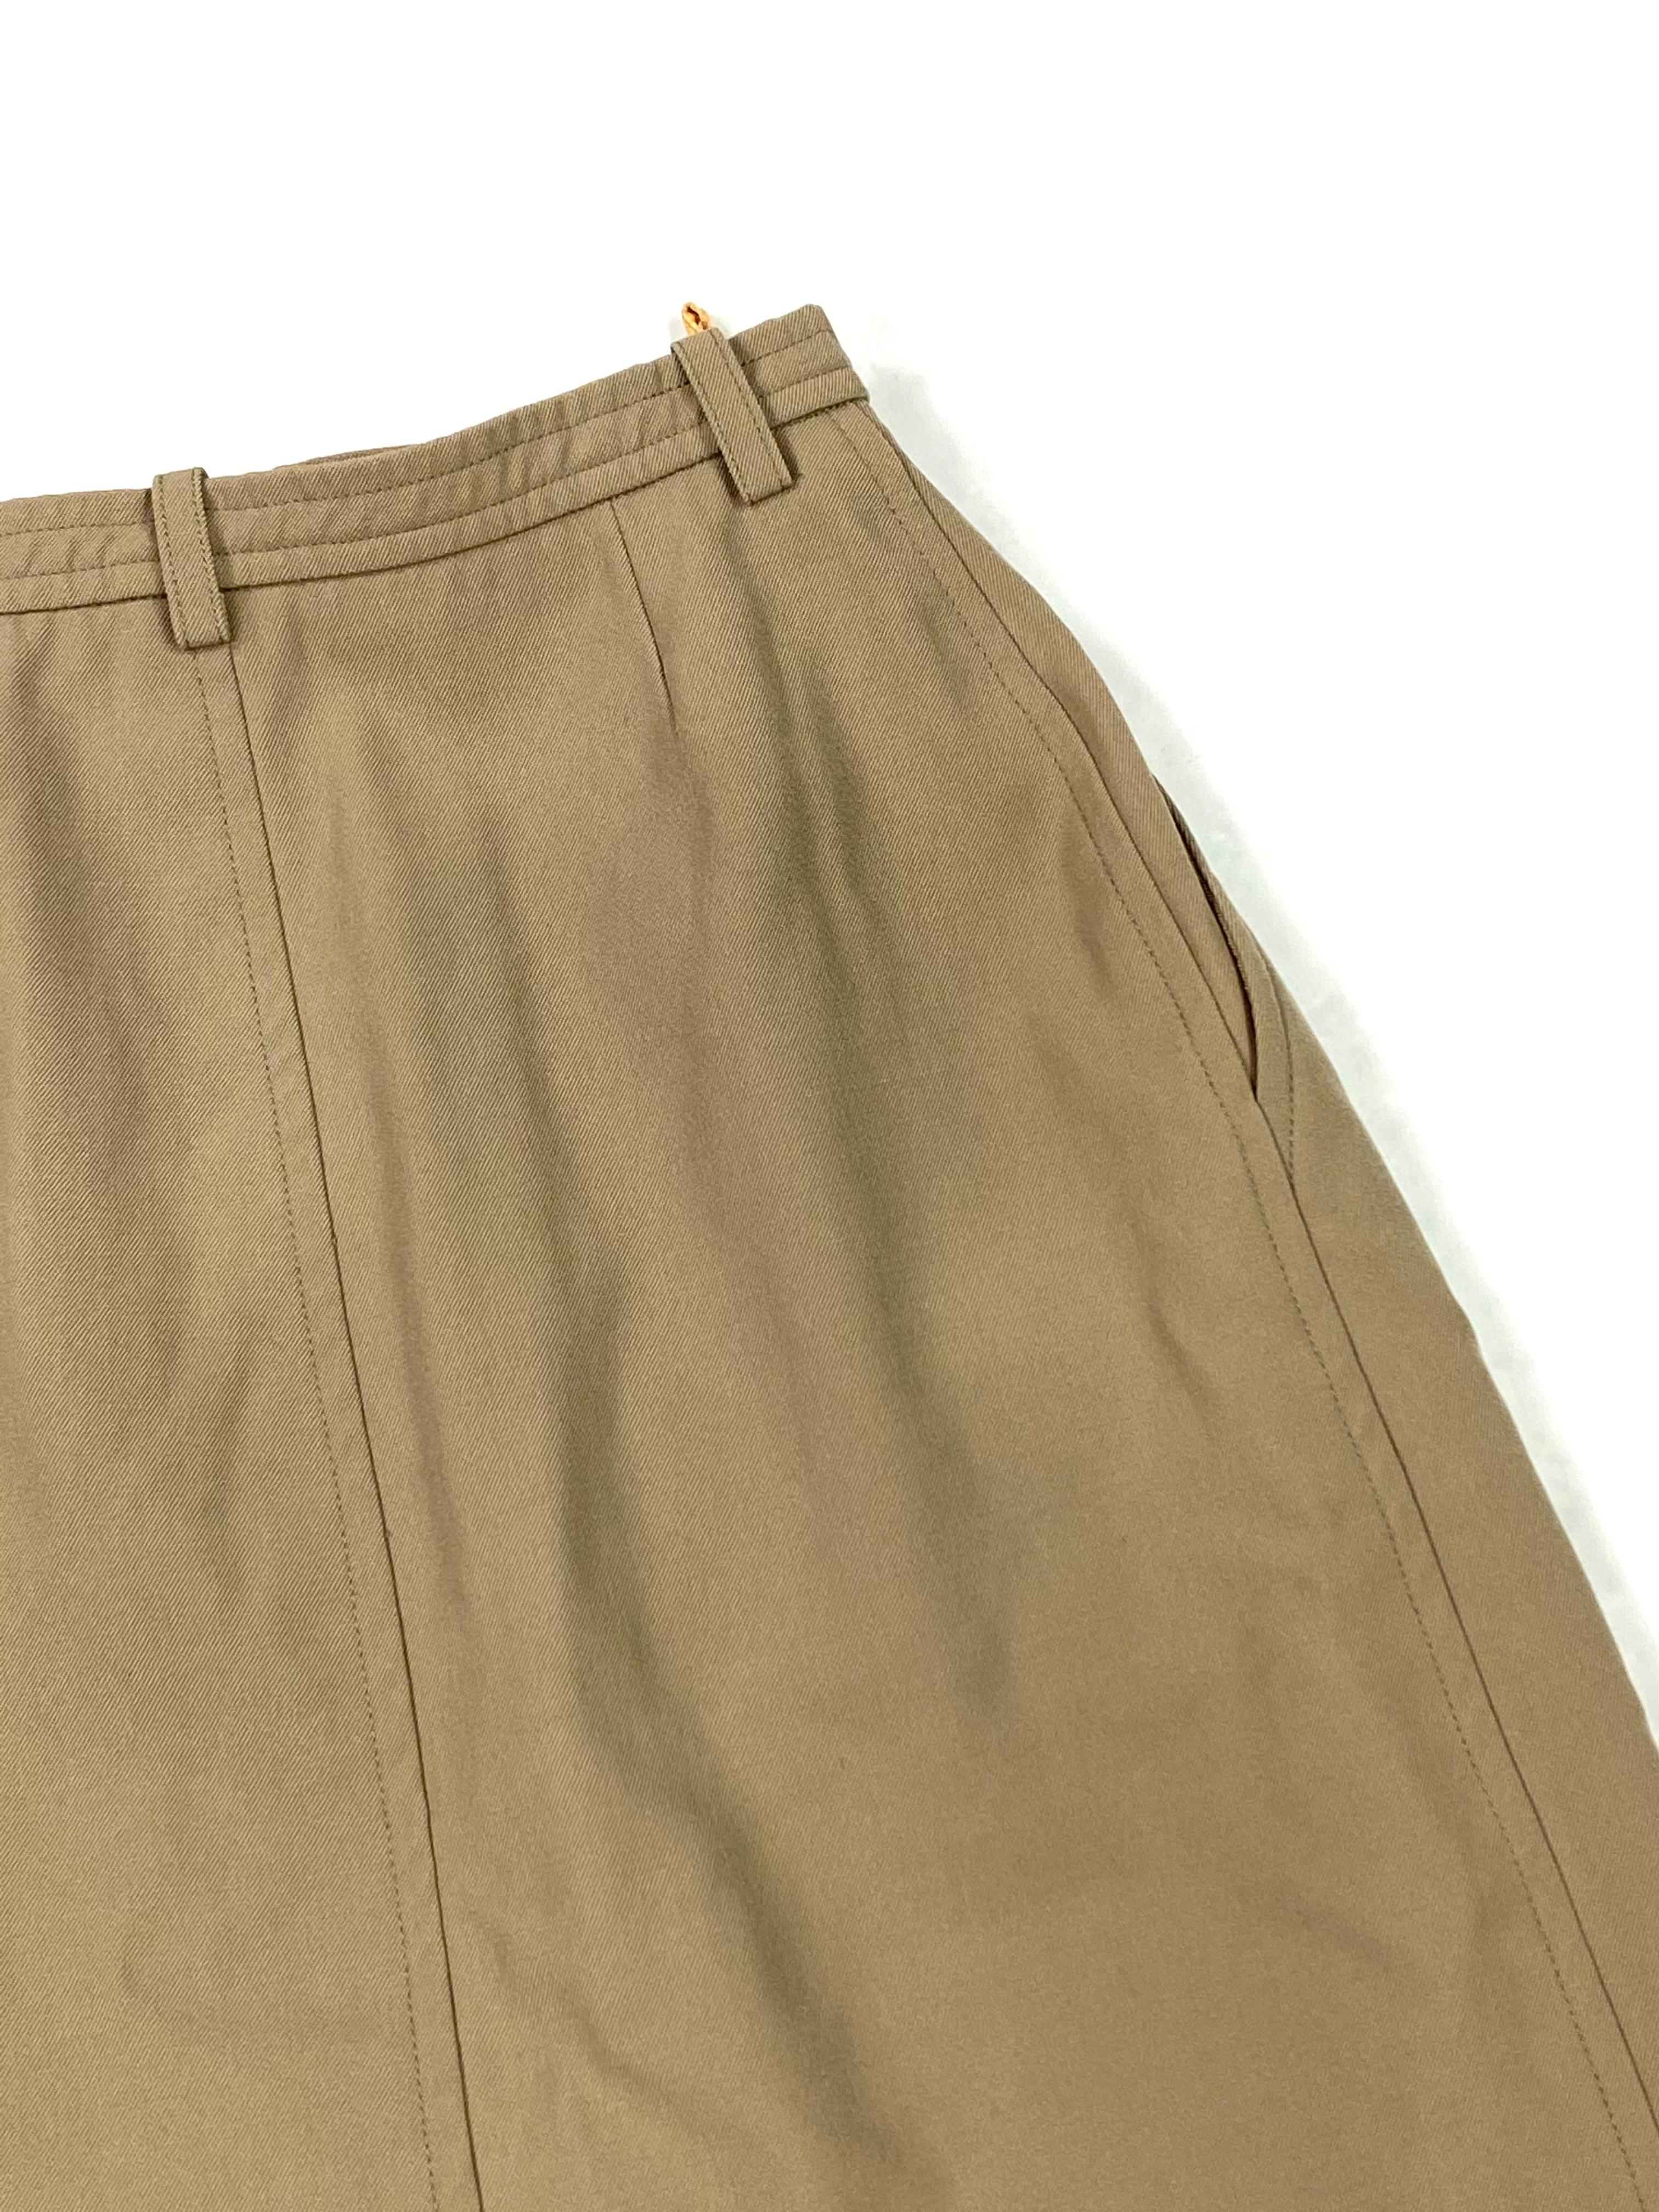 Yves Saint Laurent Rive Gauche Paris Brown Skirt, Size 36 For Sale 7